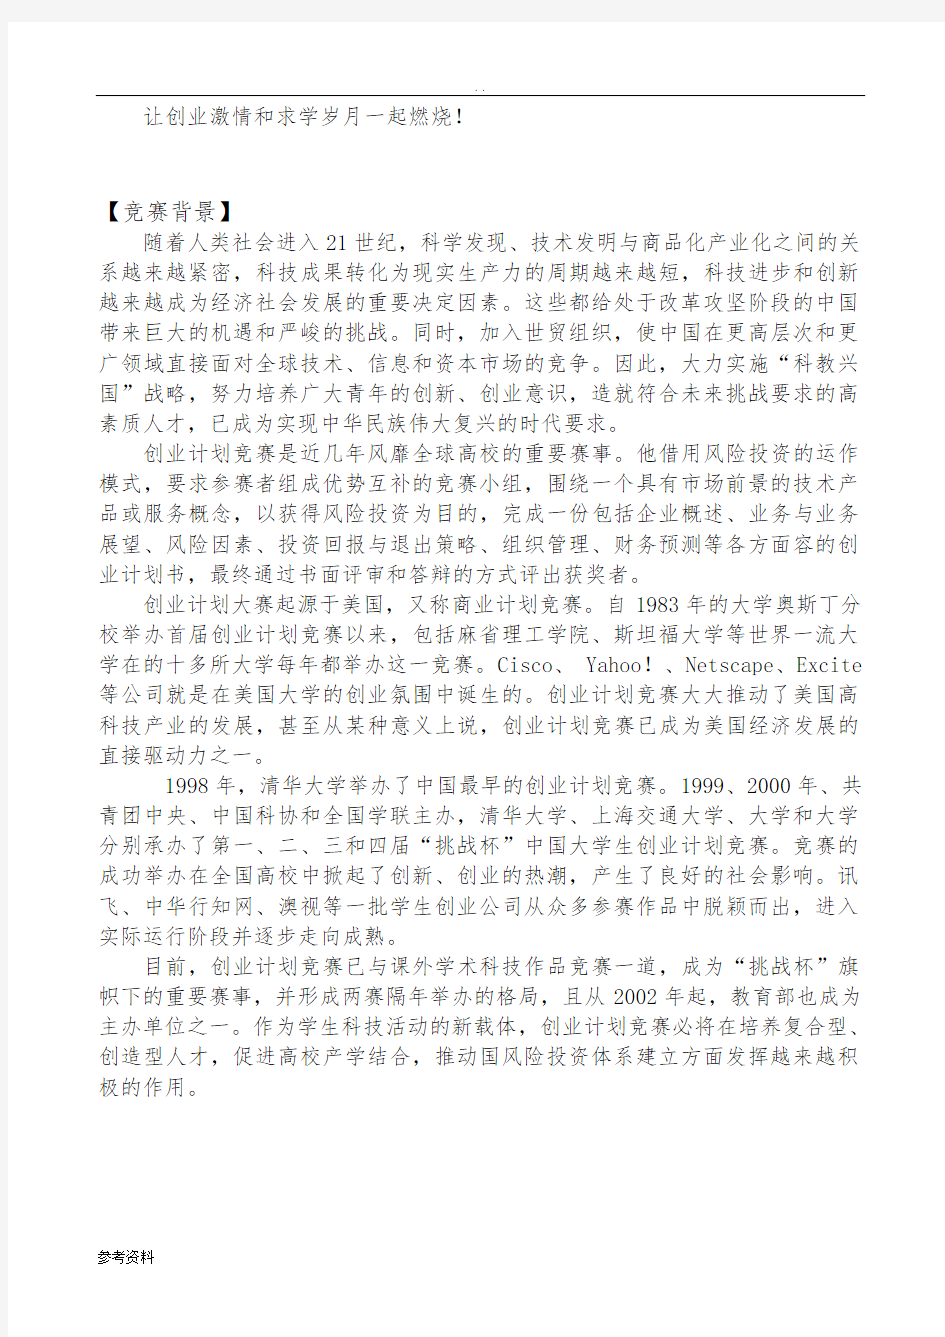 北京师范大学珠海分校创业大赛计划书